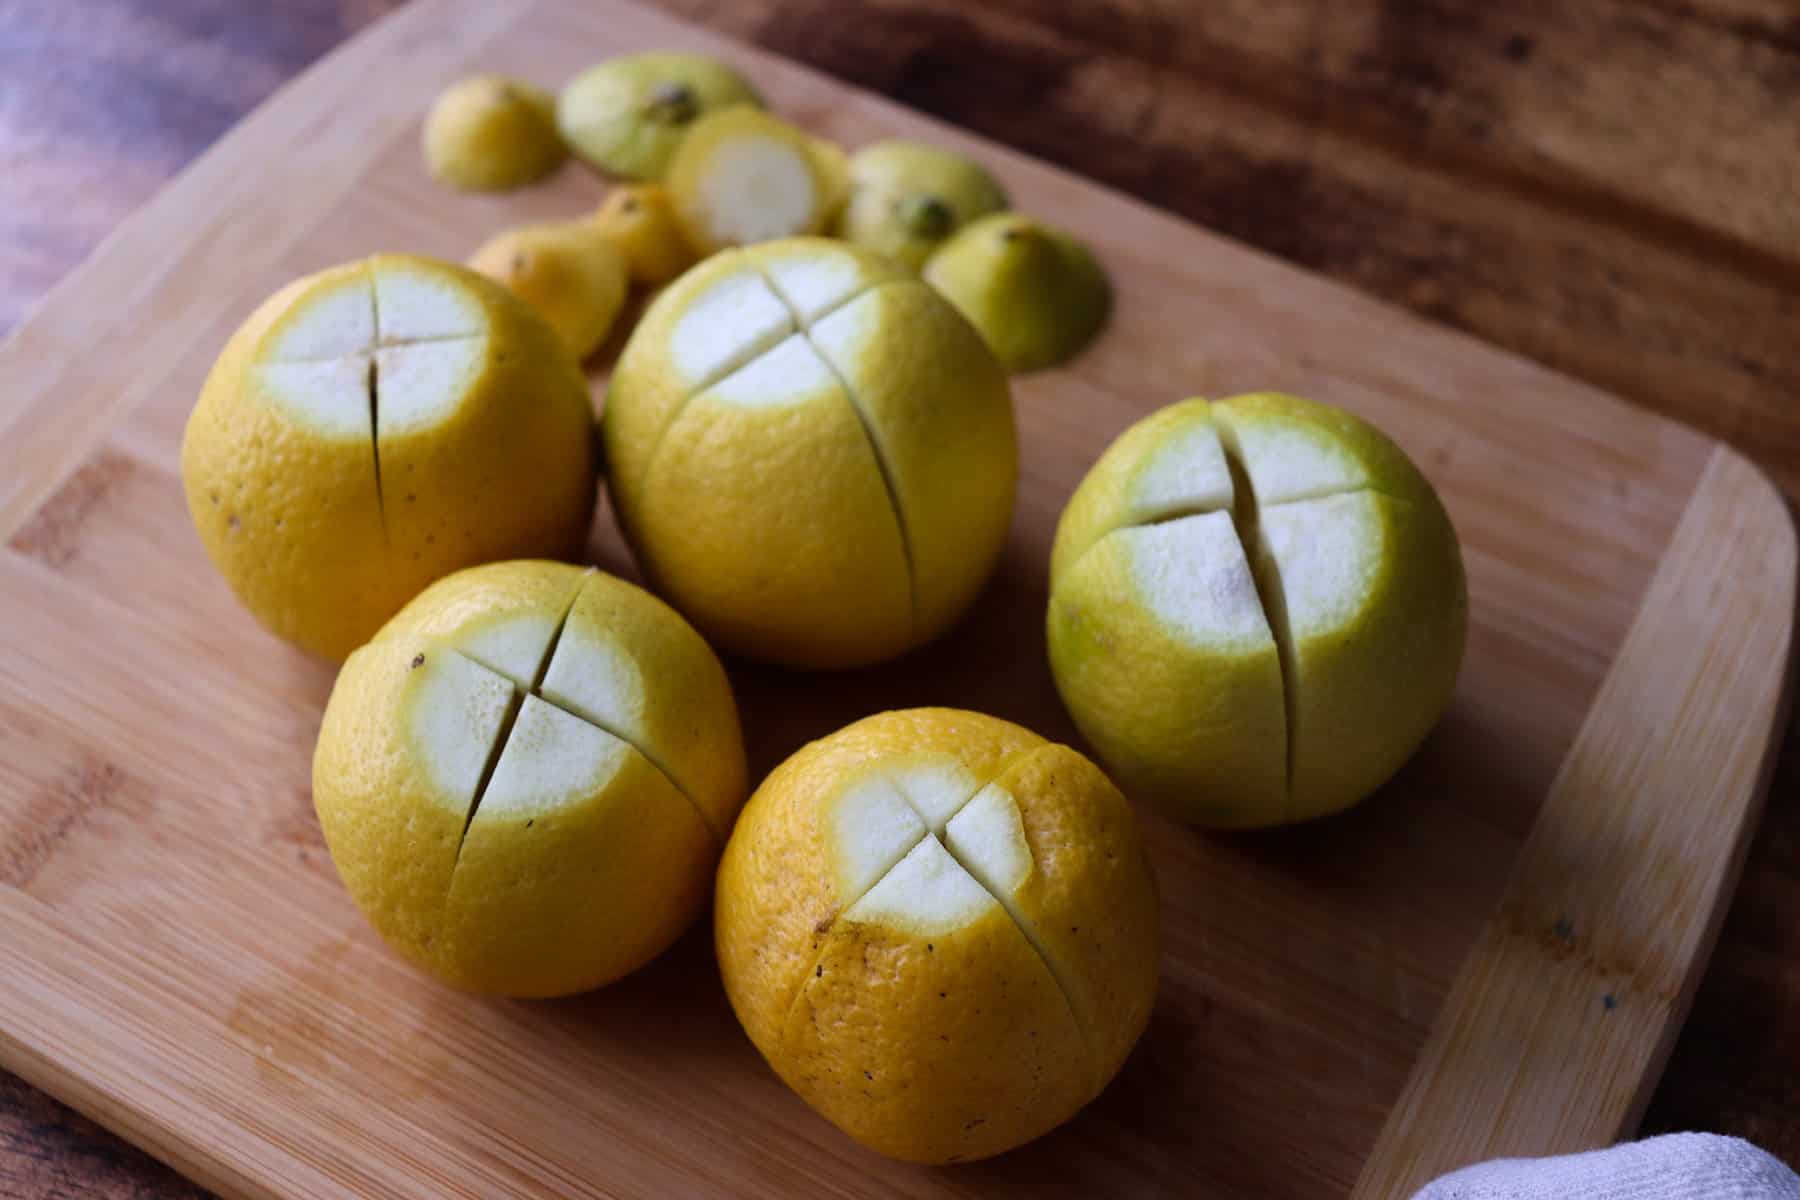 cuts in the lemons like Xs